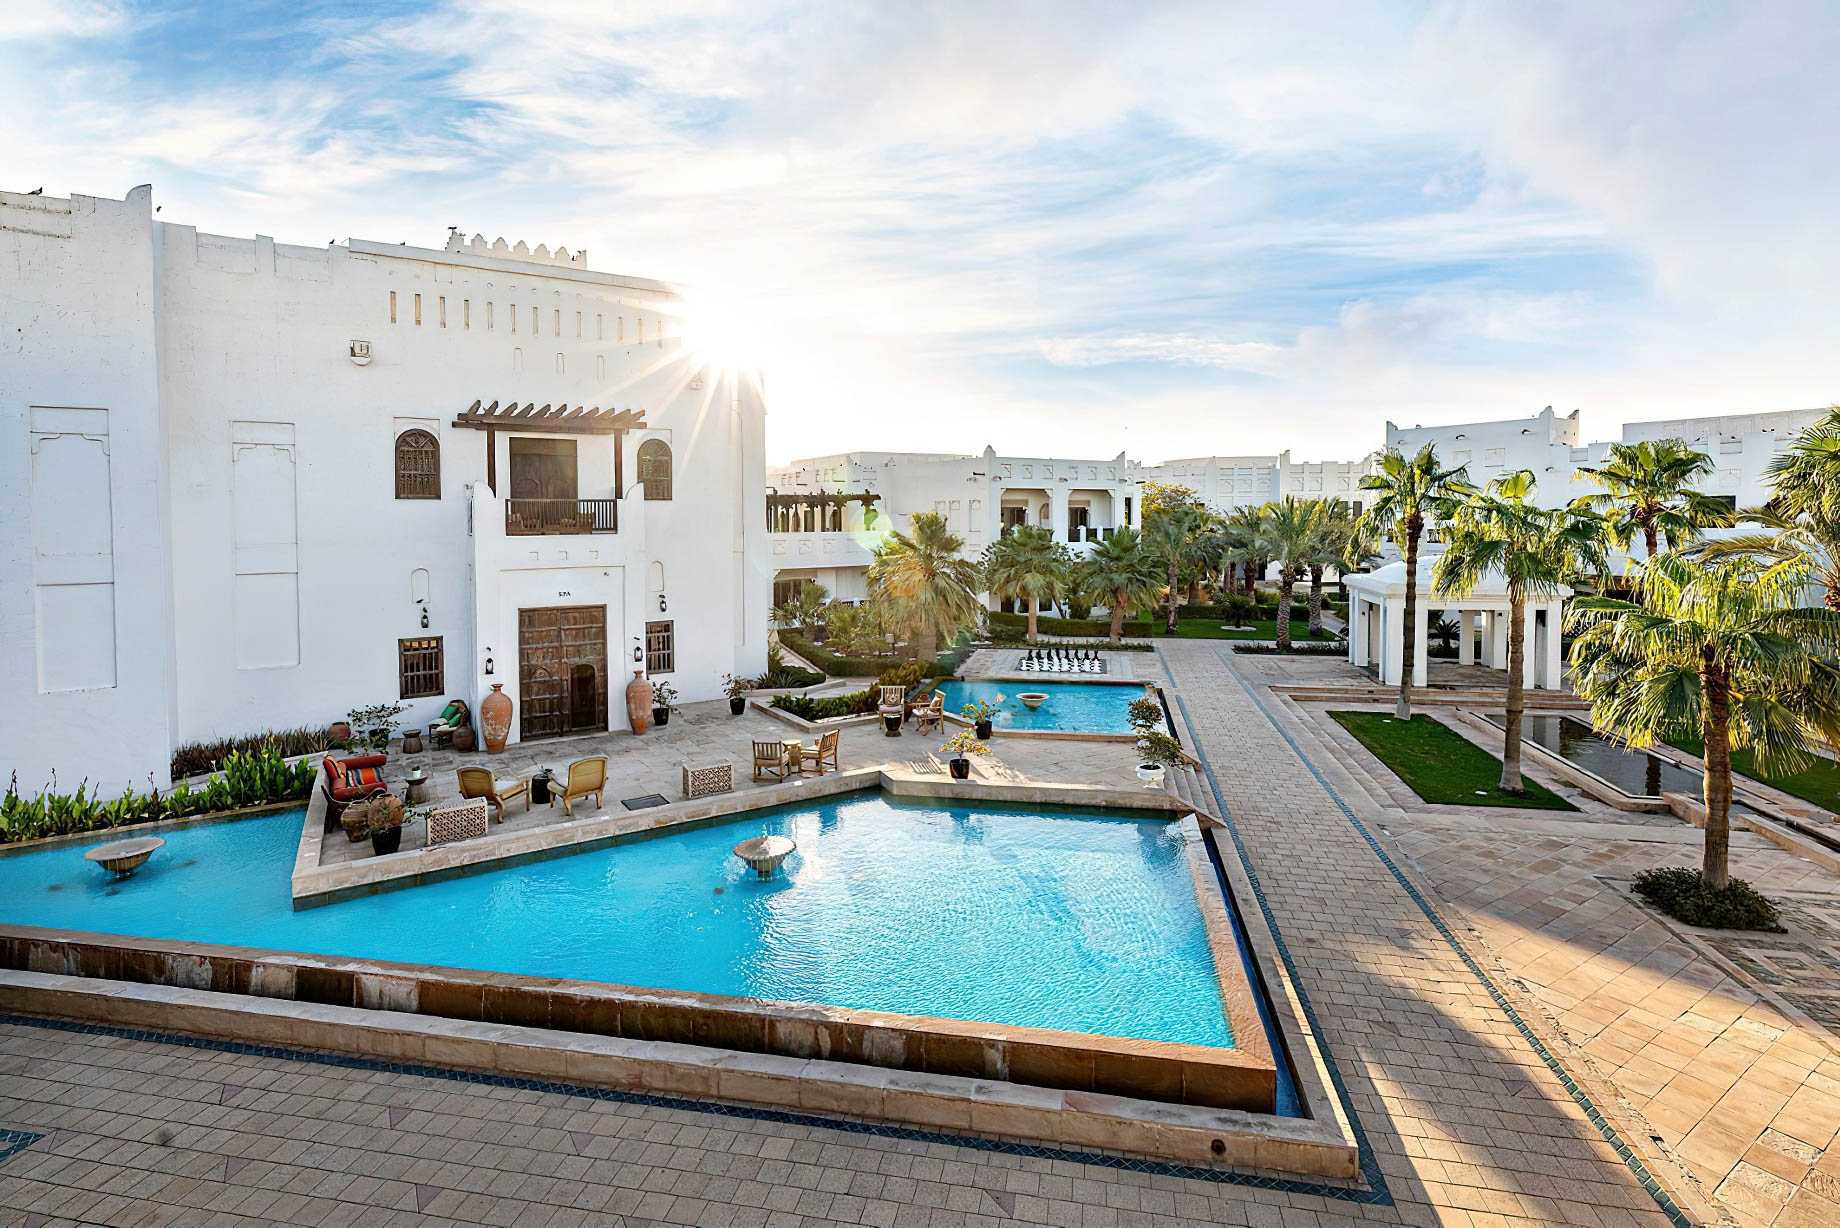 Sharq Village & Spa, A Ritz-Carlton Hotel – Doha, Qatar – Spa Exterior Pool